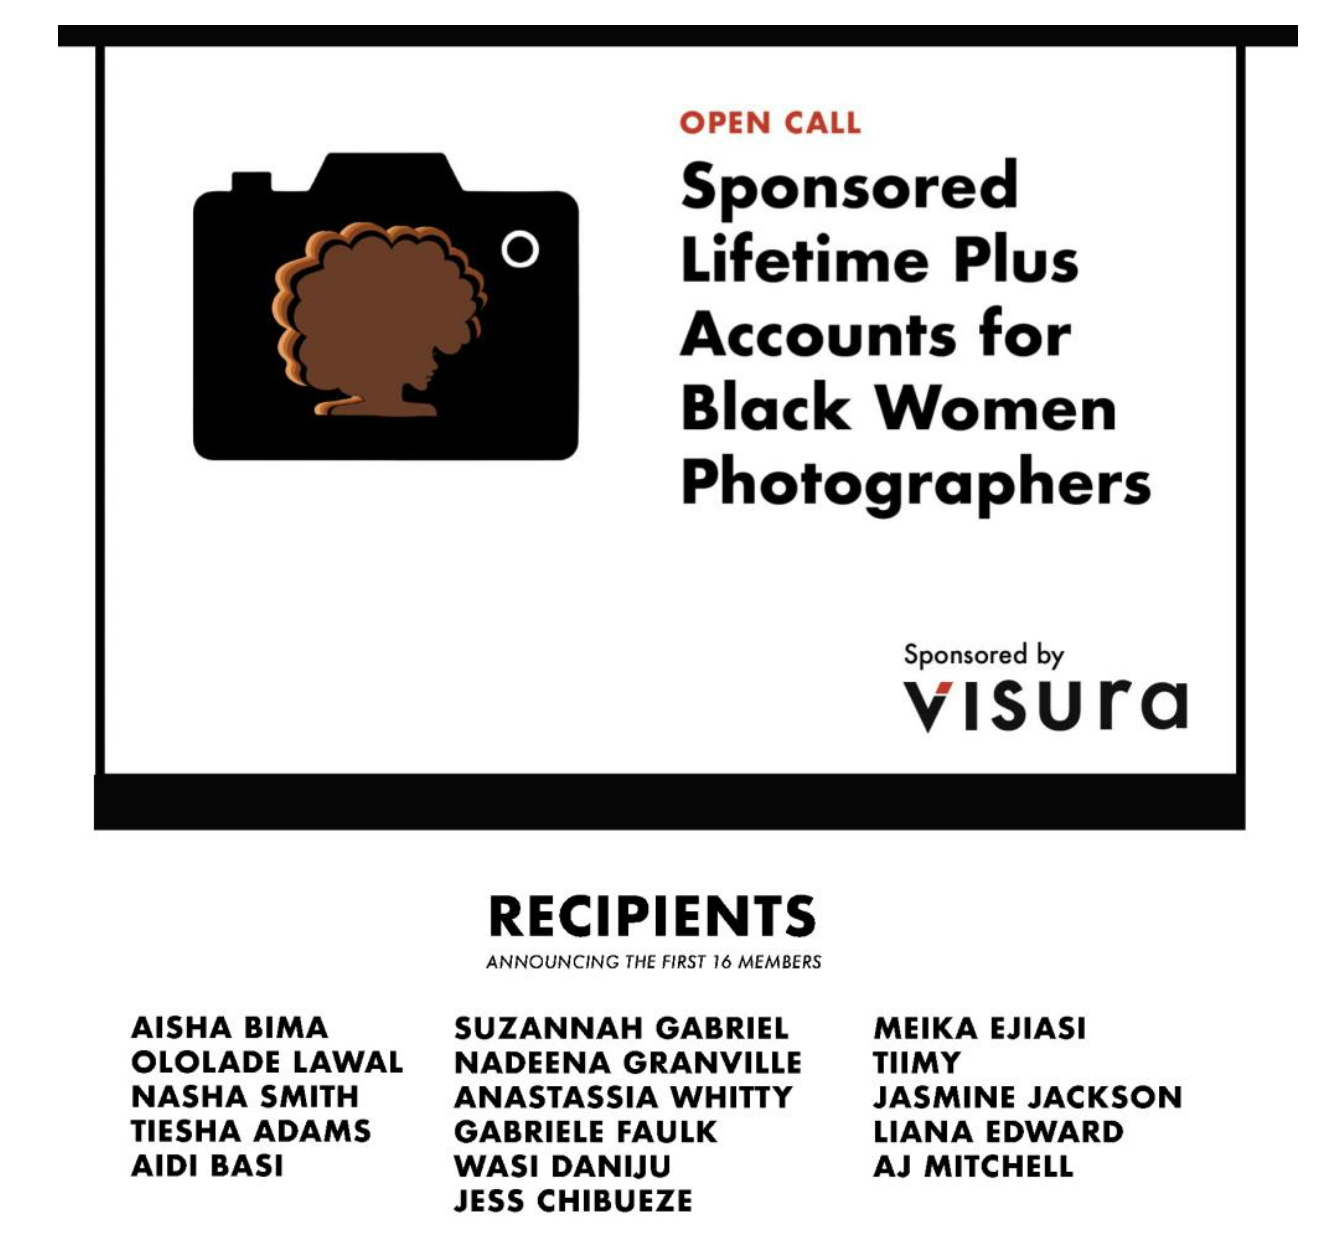 Thumbnail of Winner of the Black Women Photographers Open Call for Visura